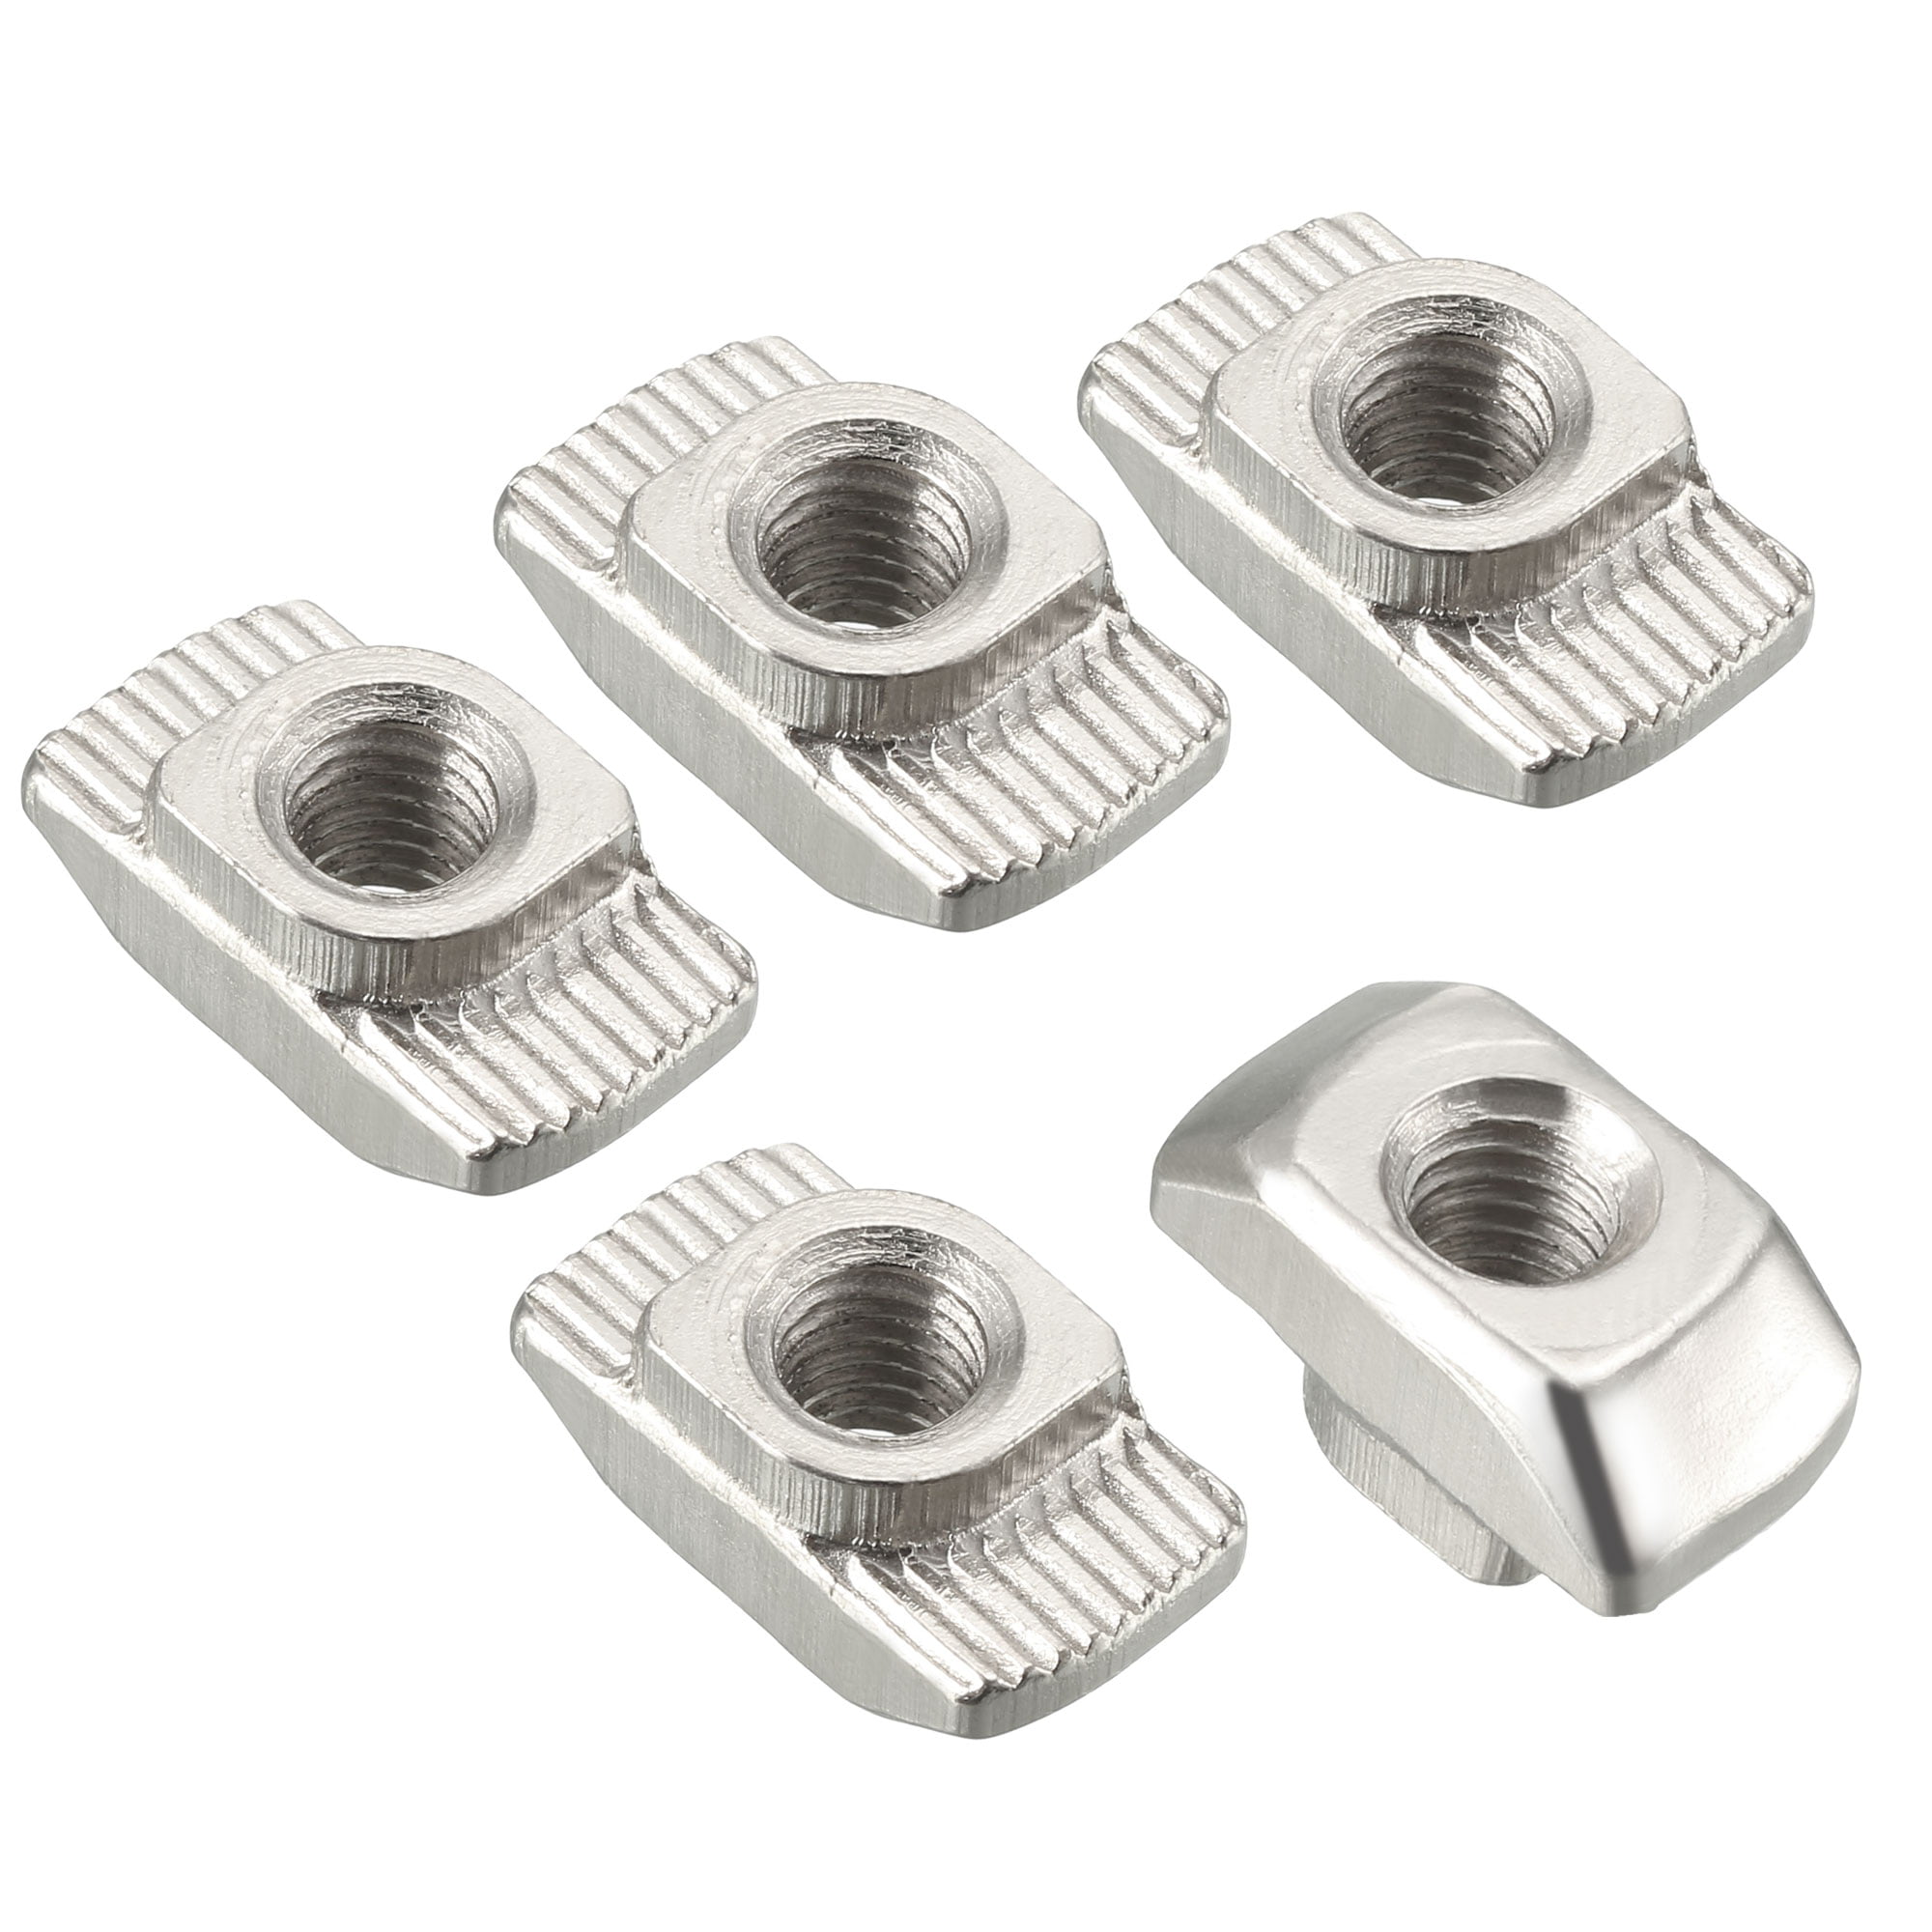 M6 20pcs T-Slot Nuts,Zinc Plated Carbon Steel Sliding T-Slot Nut for Aluminum Profile Accessories 